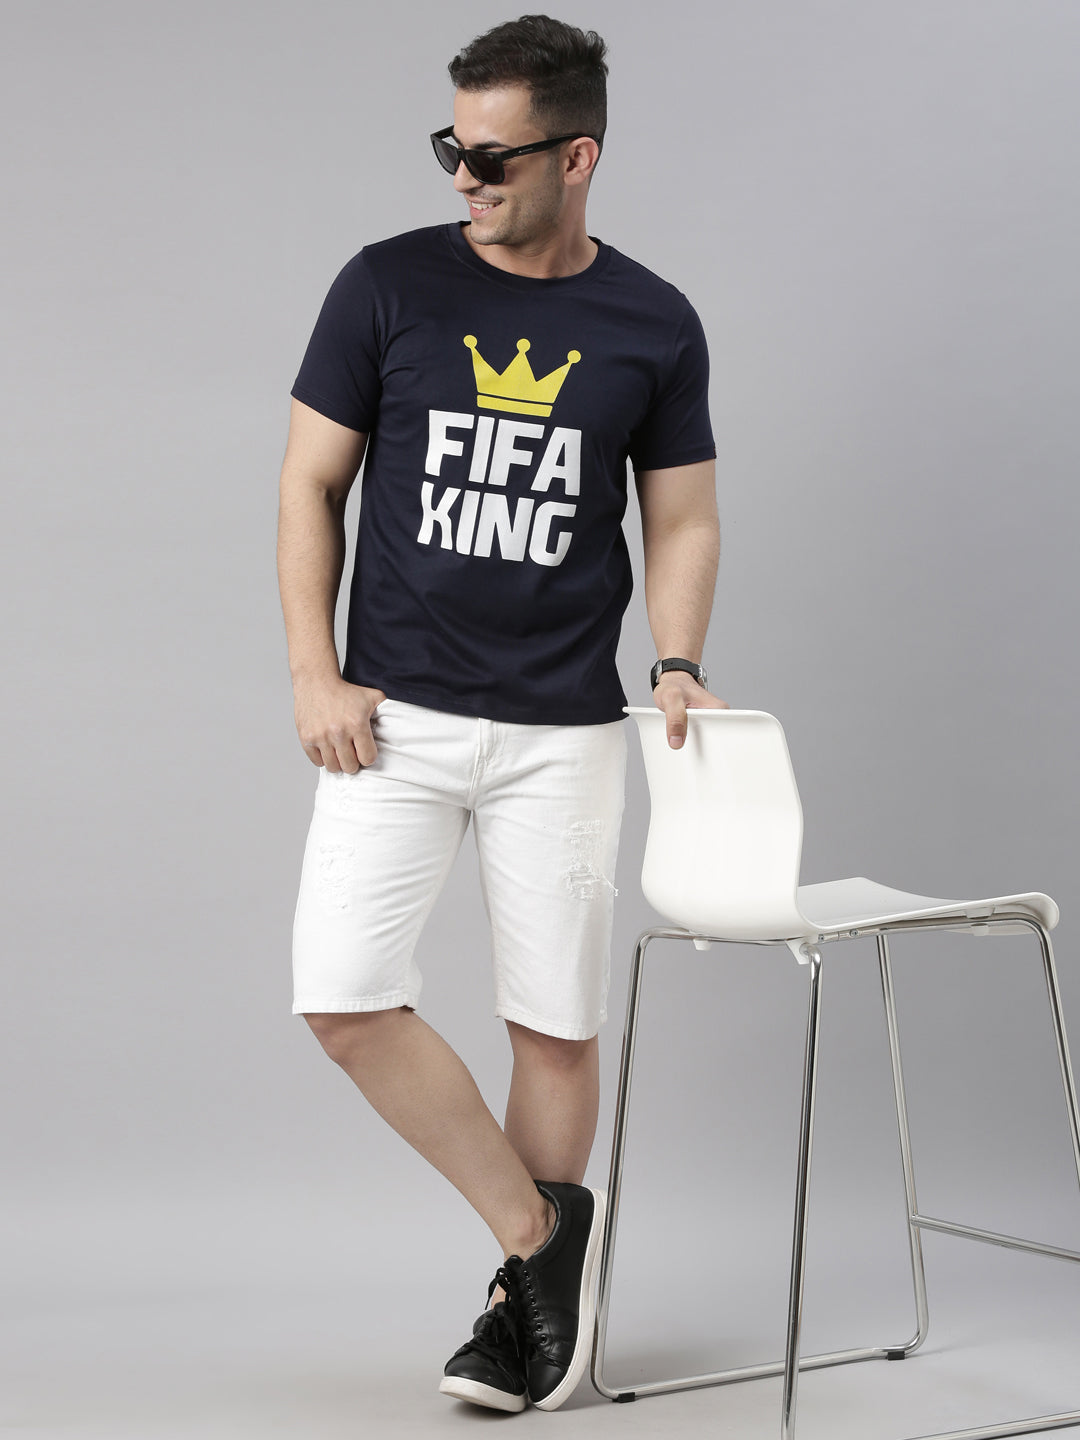 Fifa King - Fifa Gaming T-Shirt Gaming T-Shirt Bushirt   